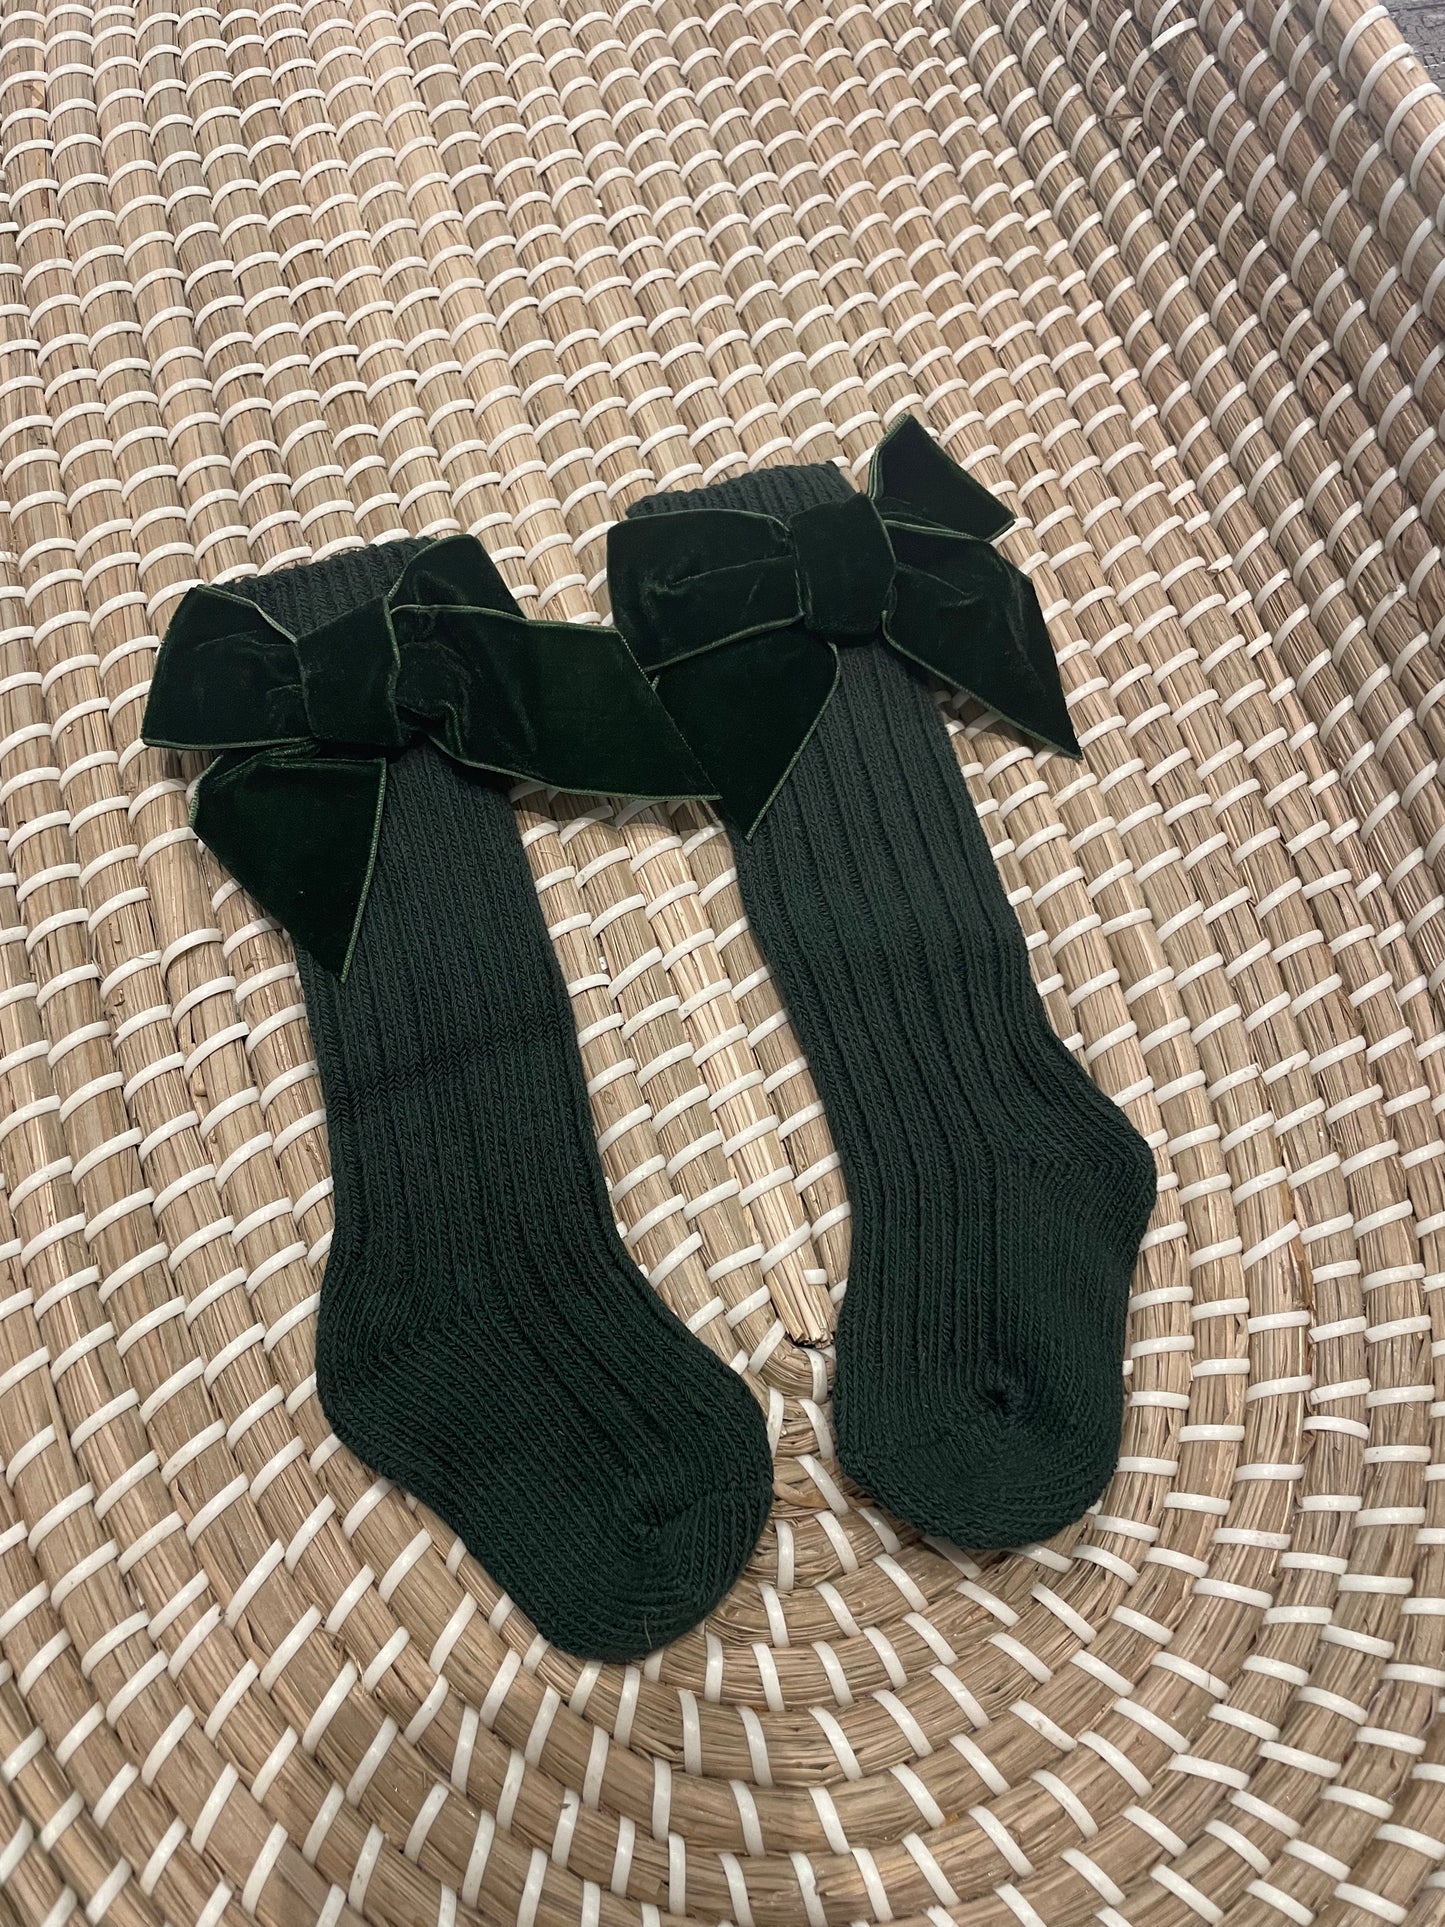 Green velvet bow socks